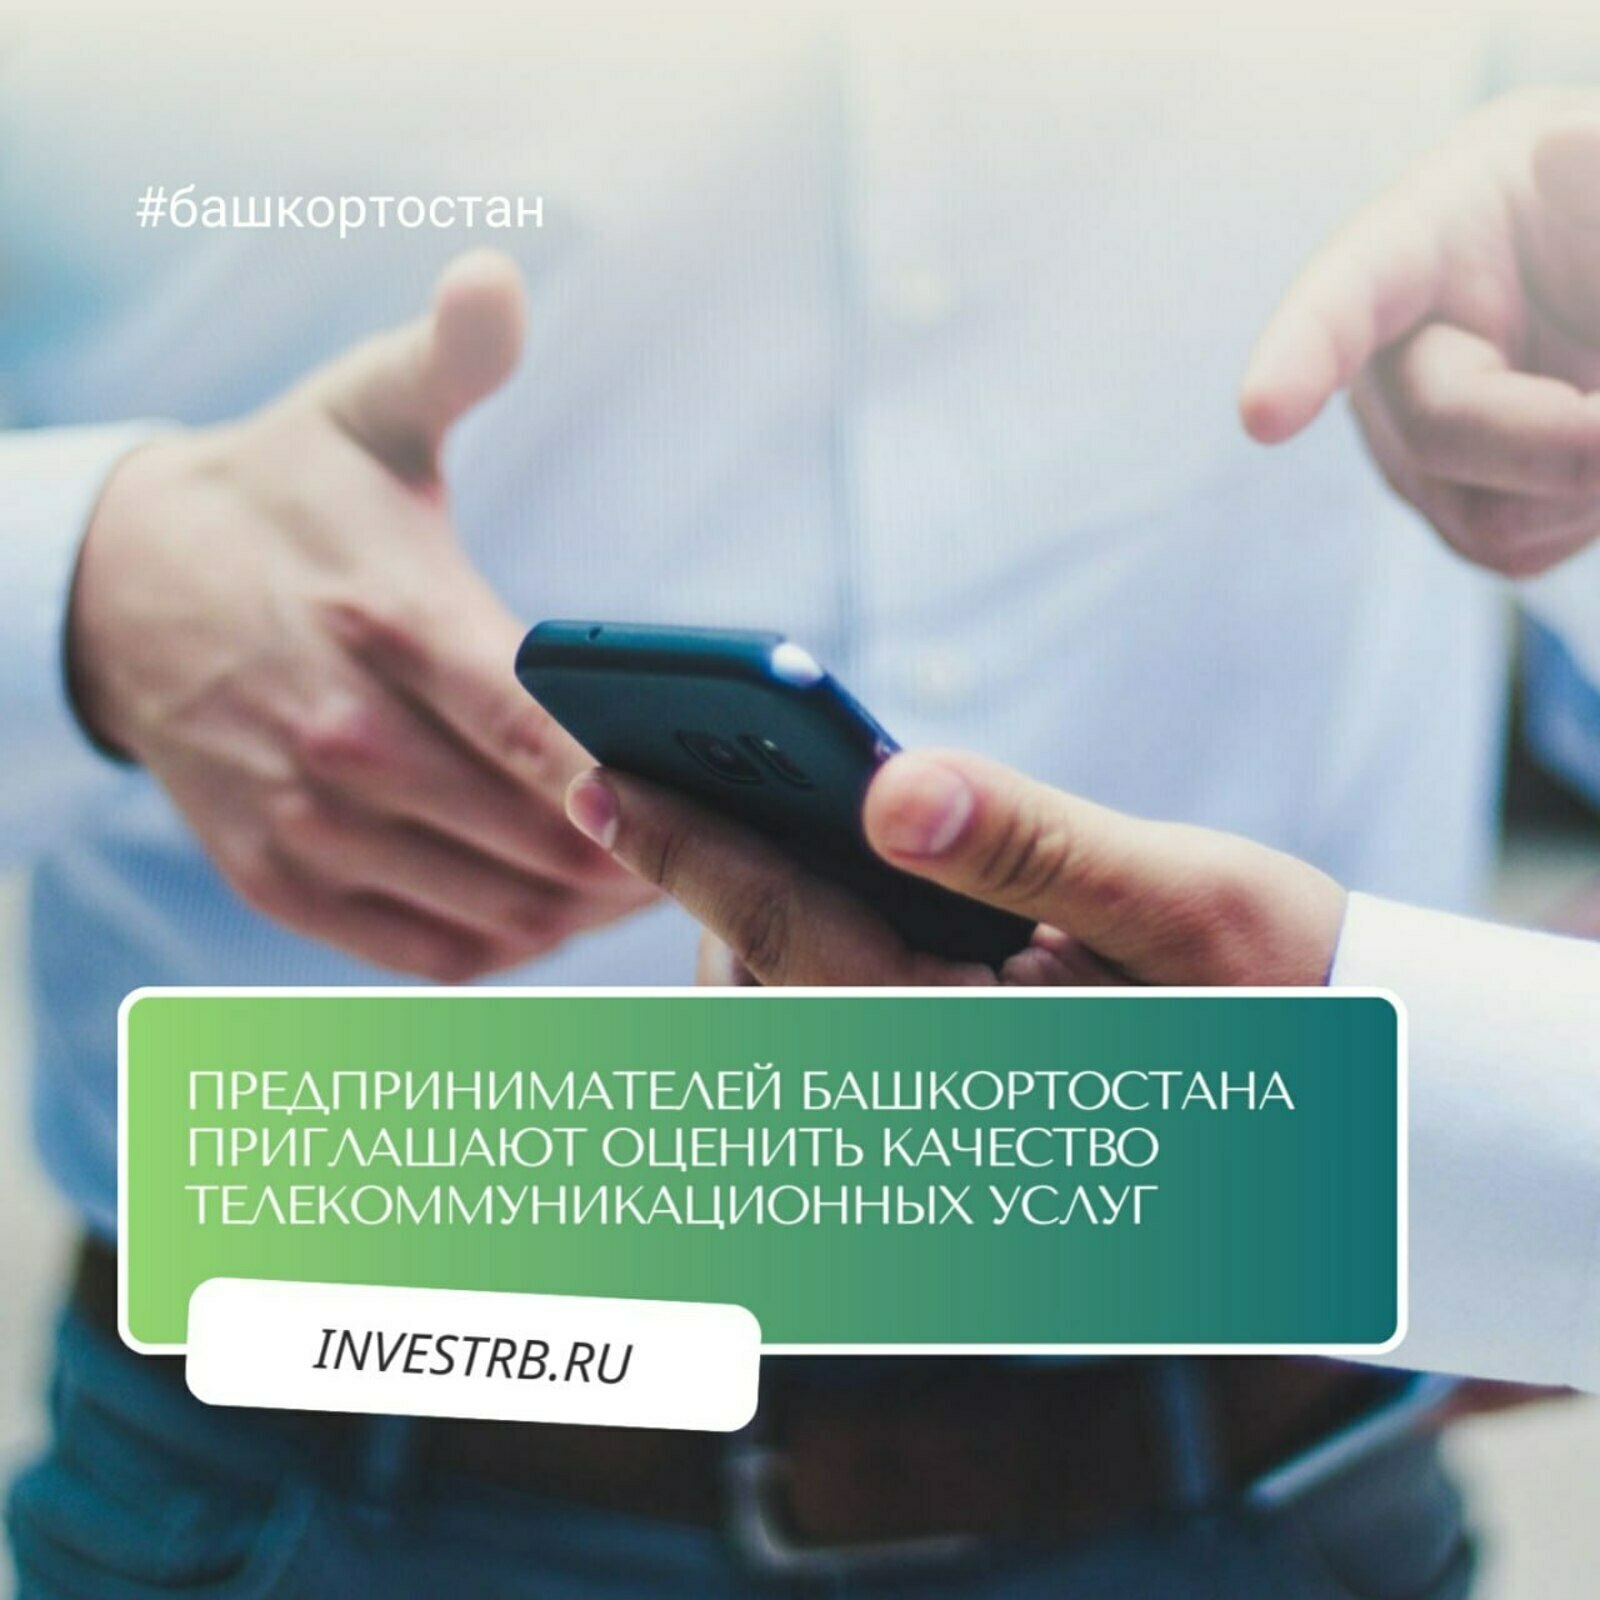 В Башкортостане предприниматели оценят качество телеком-услуг